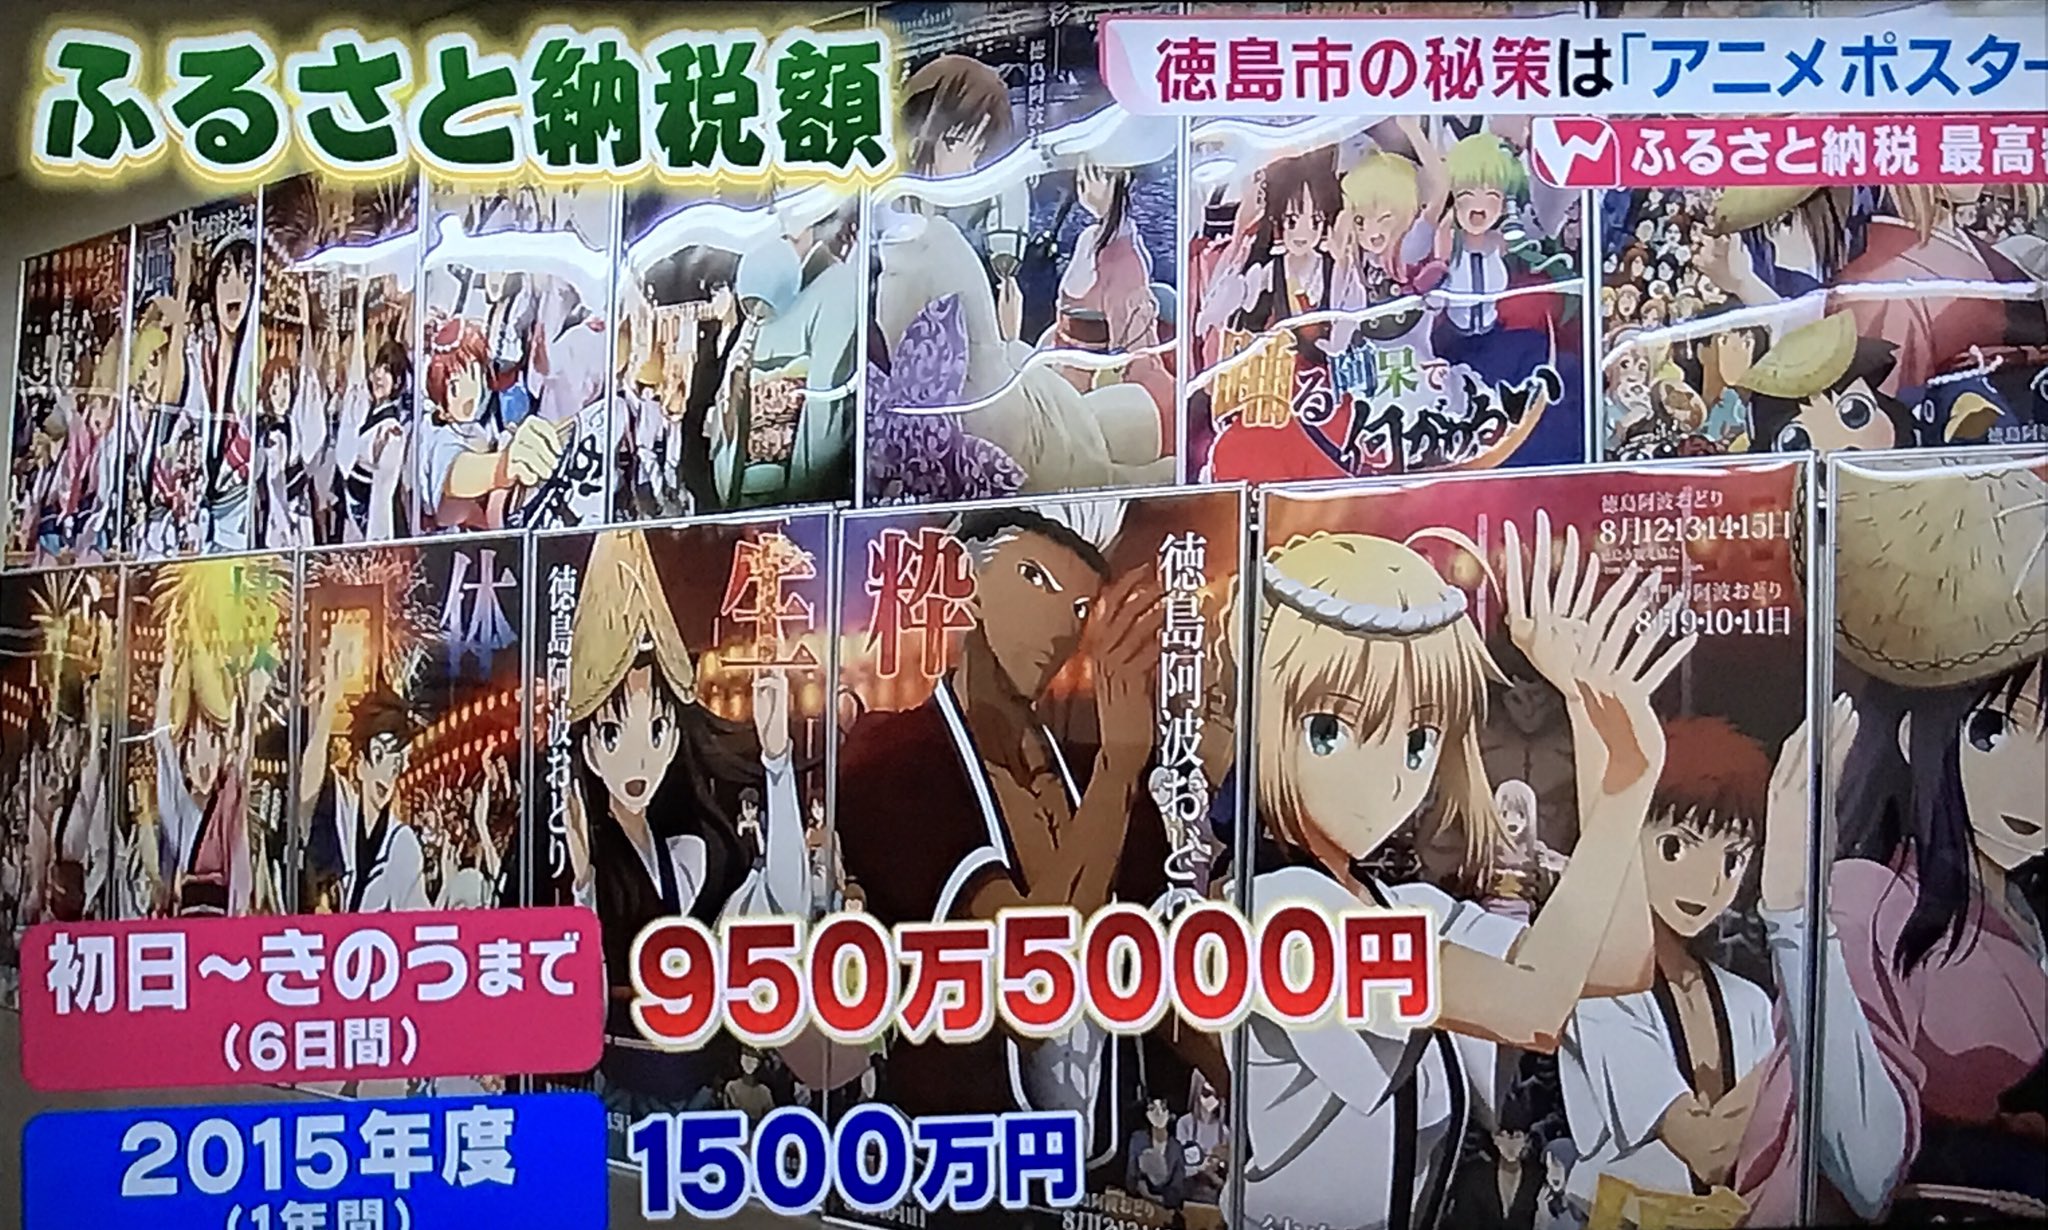 アニメポスターのために 徳島市にふるさと納税をするオタクがすごい 話題の画像プラス